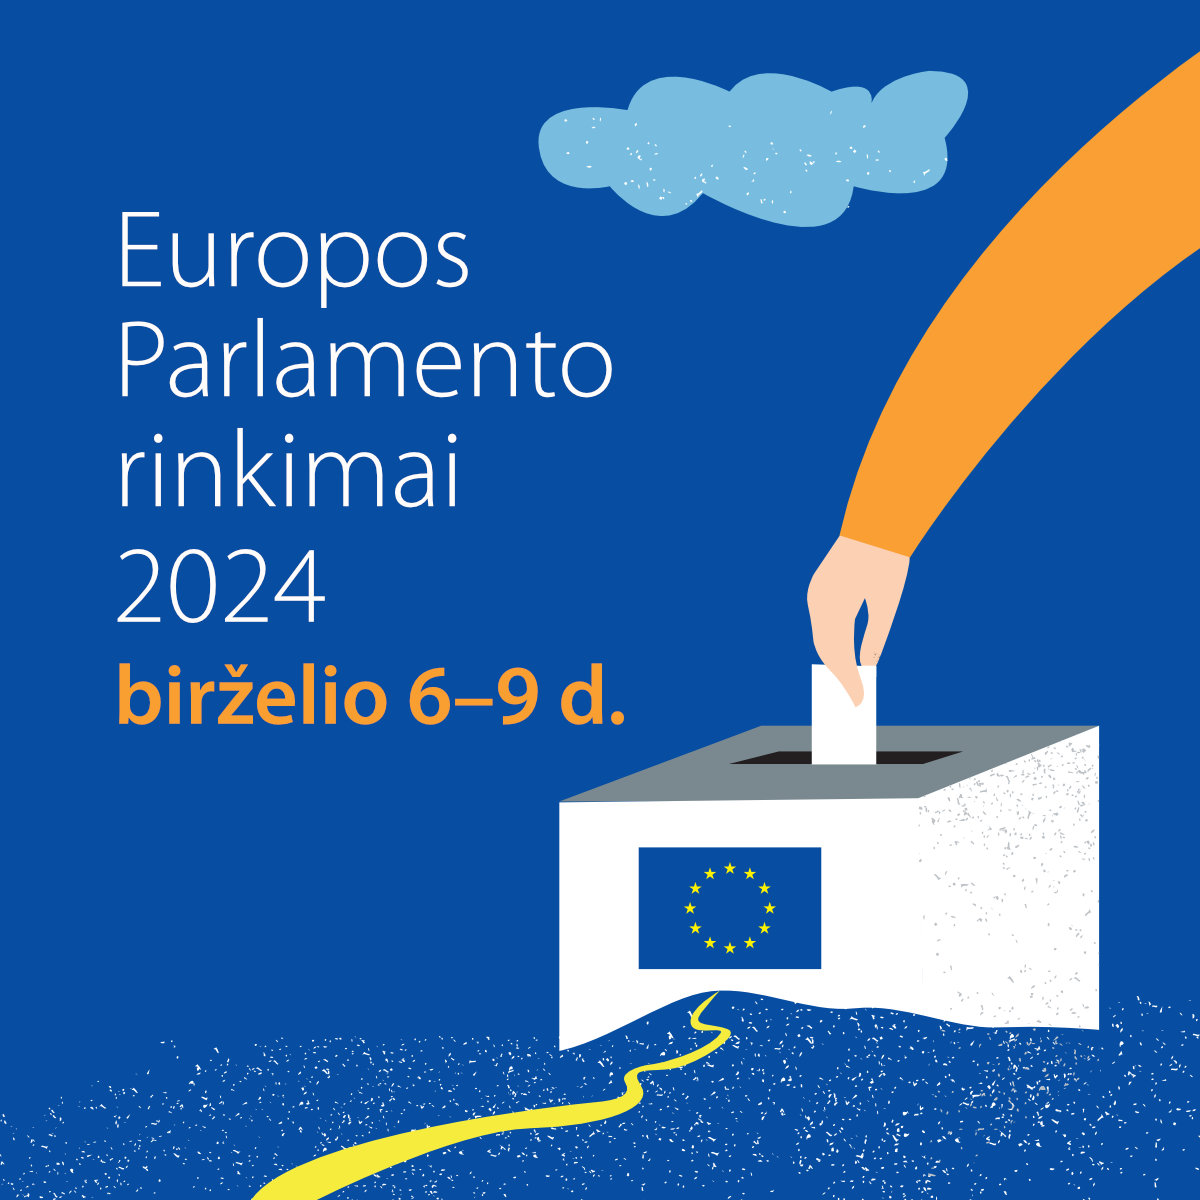 Europos Parlamento rinkimai 2024 - Square